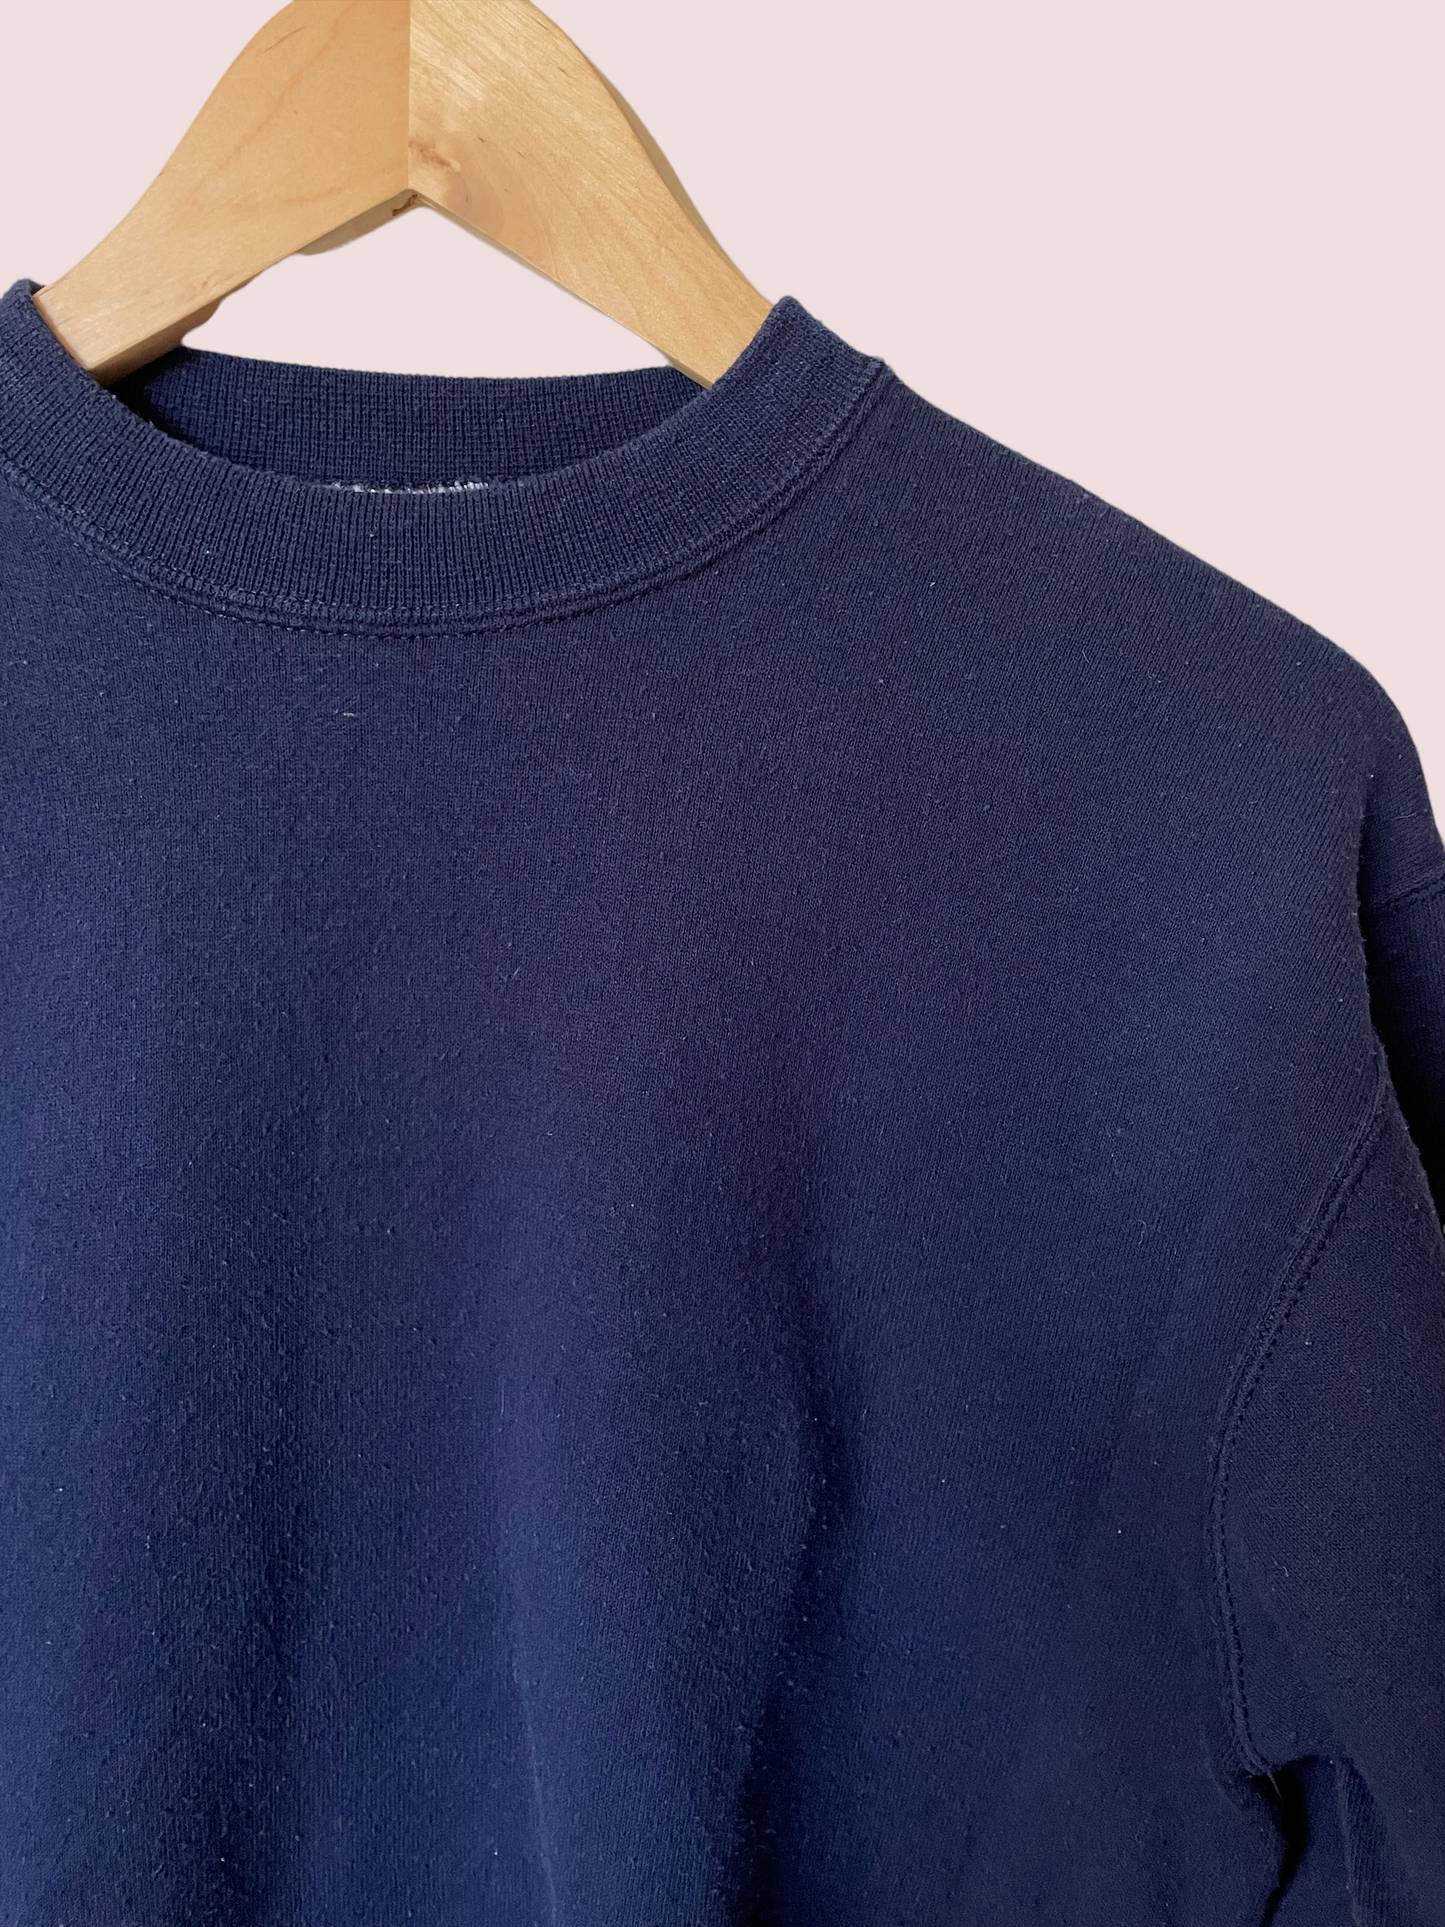 vintage CUSTOM sweatshirt in navy blue